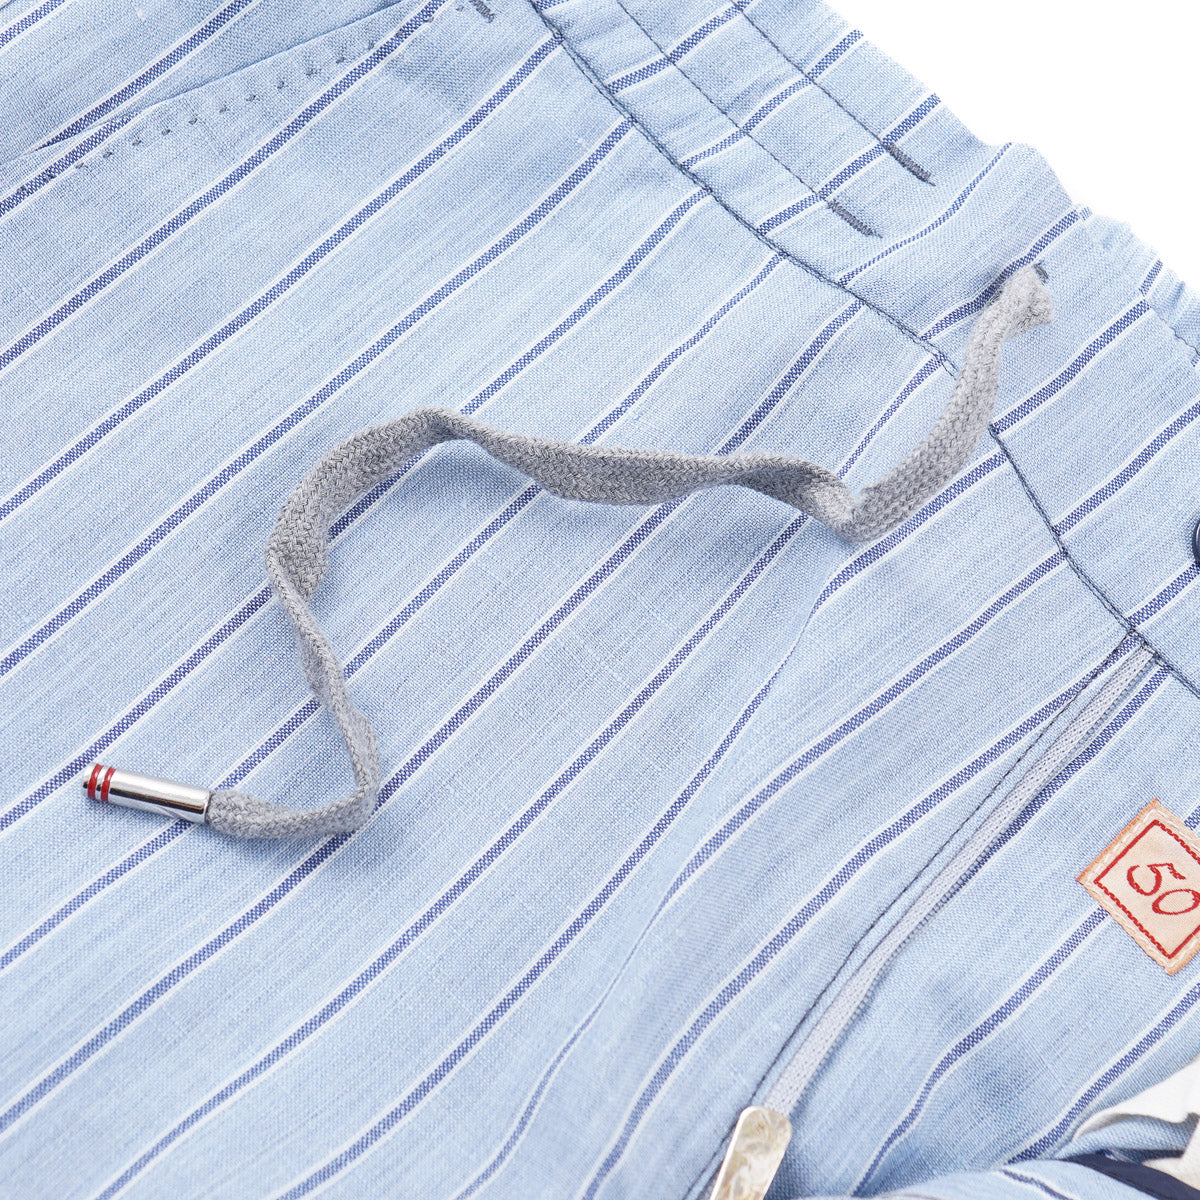 Marco Pescarolo Lightweight Wool-Linen Pants - Top Shelf Apparel